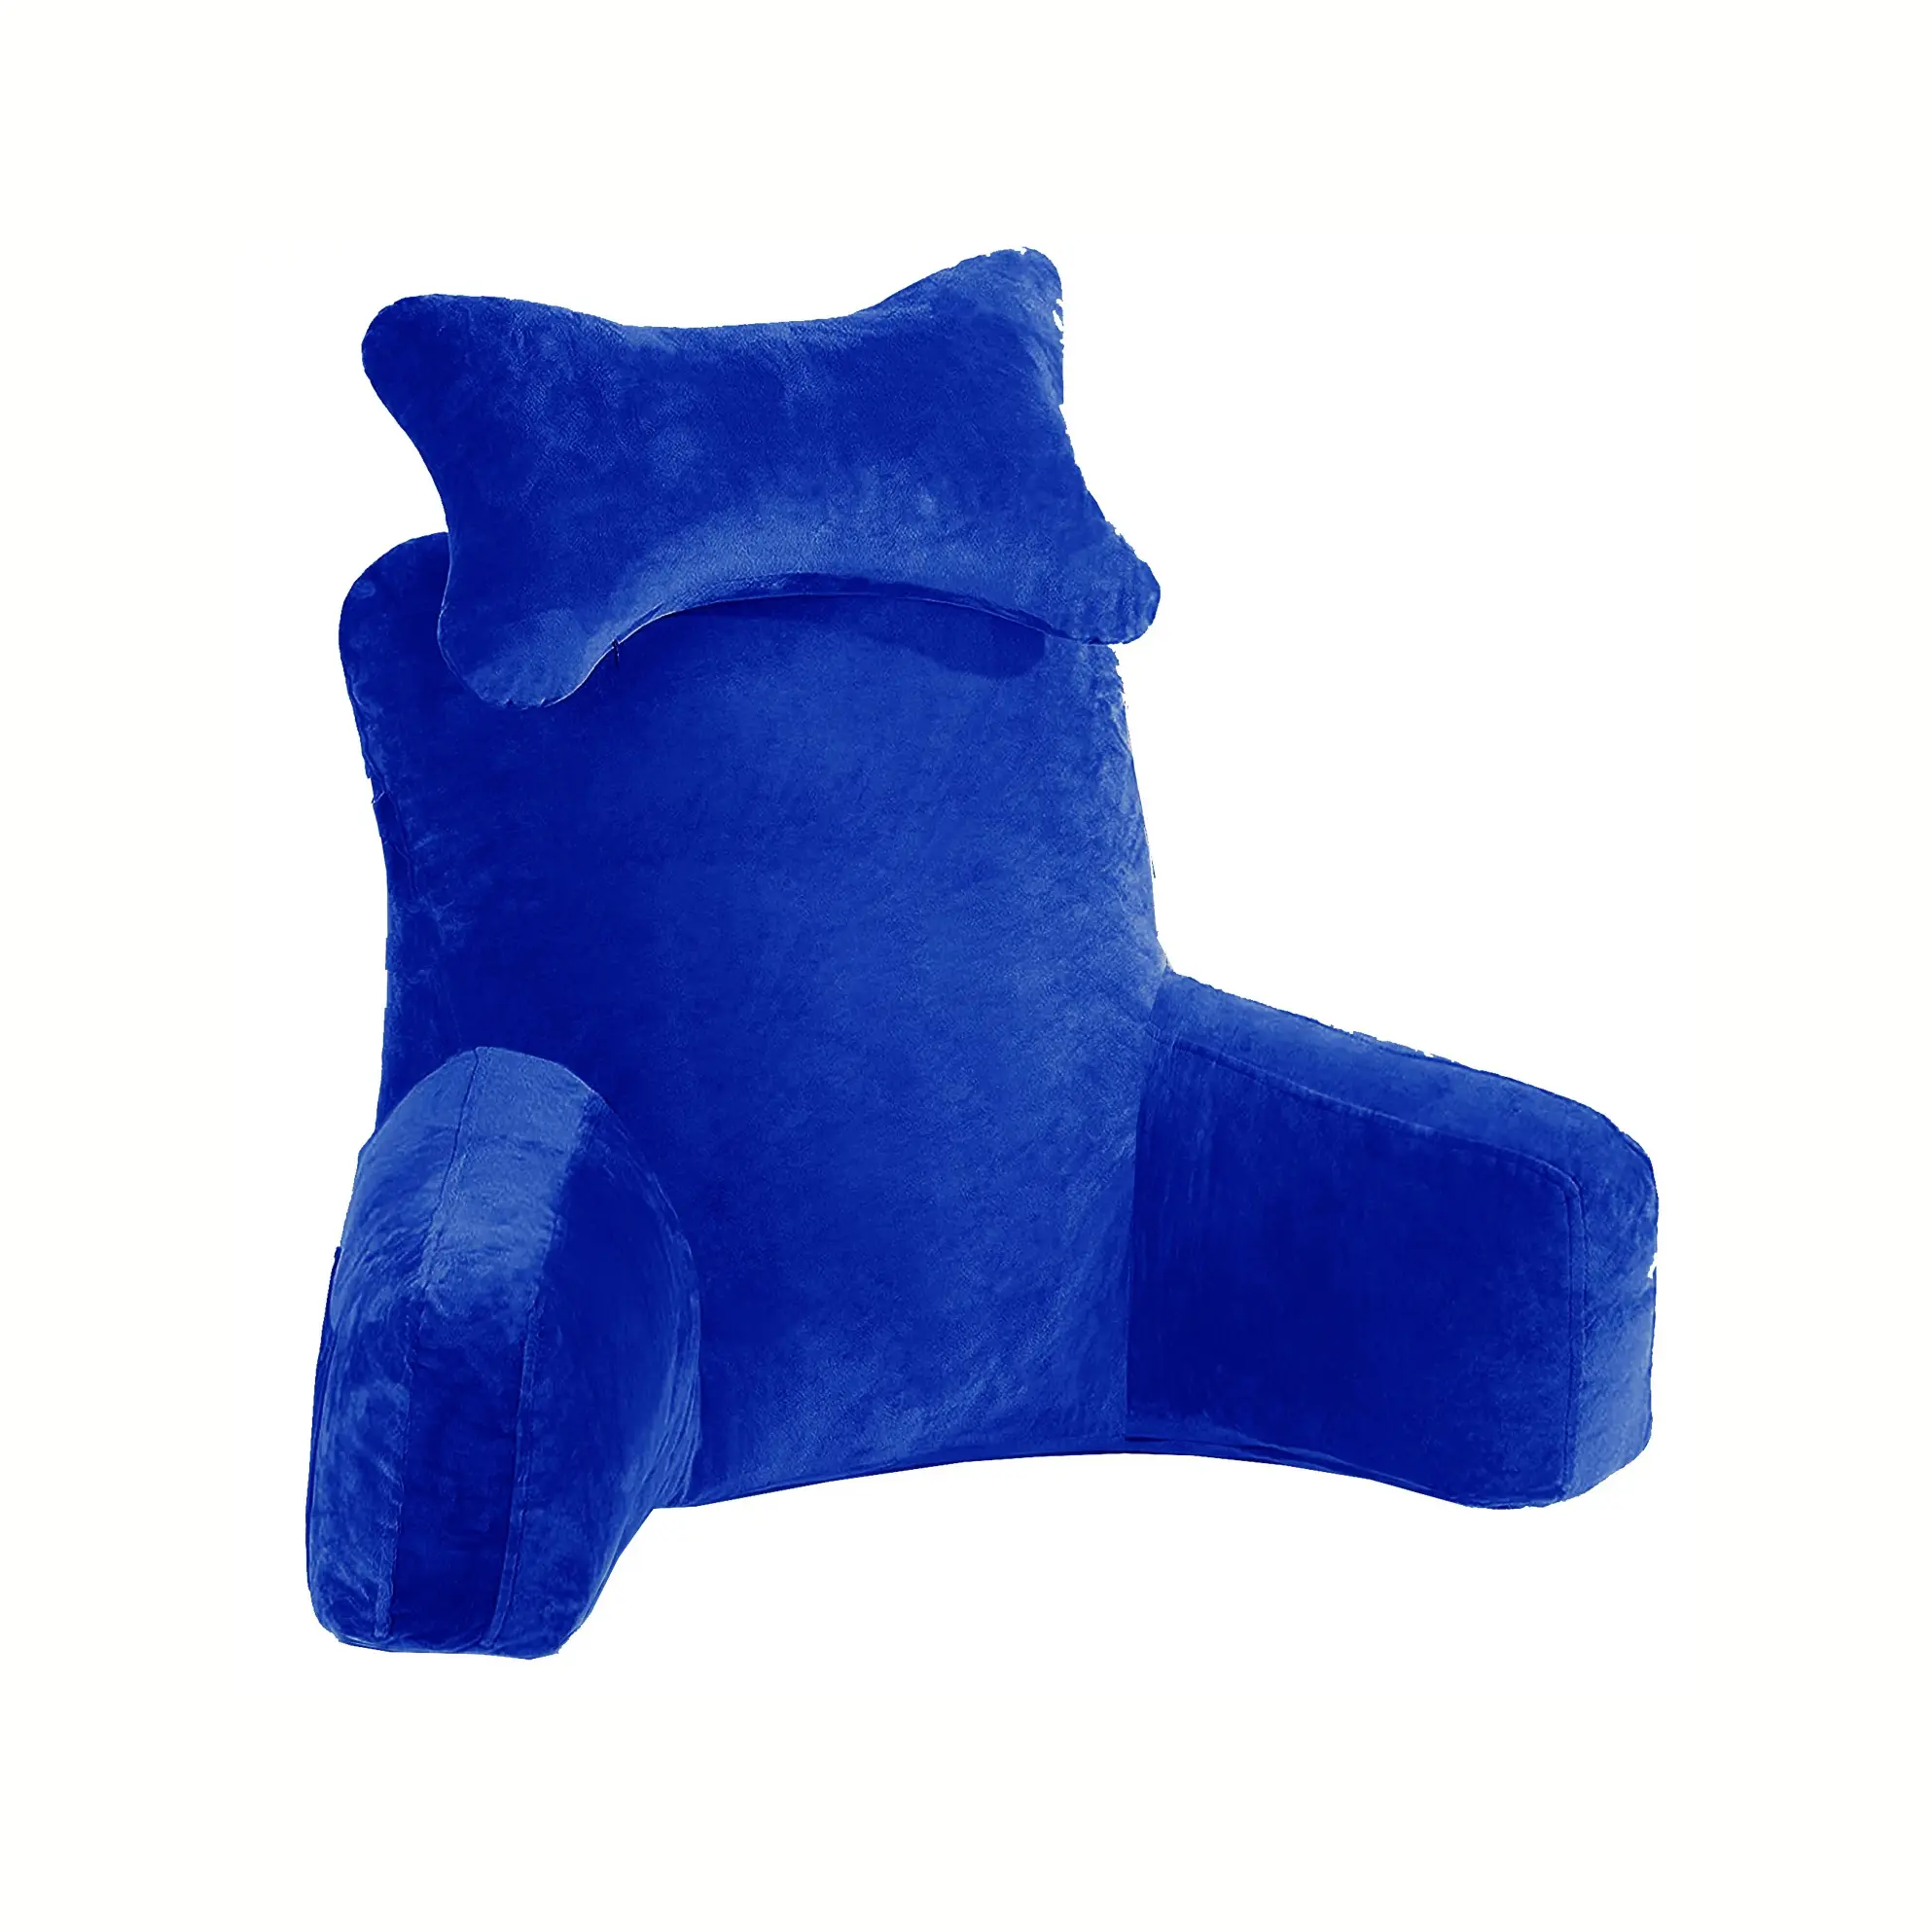 Stile caldo etichetta su misura all'ingrosso letto letto cuneo lettura cuscino schienale cuscino con braccia ODM servizi ad alto impatto ultima moda Bac